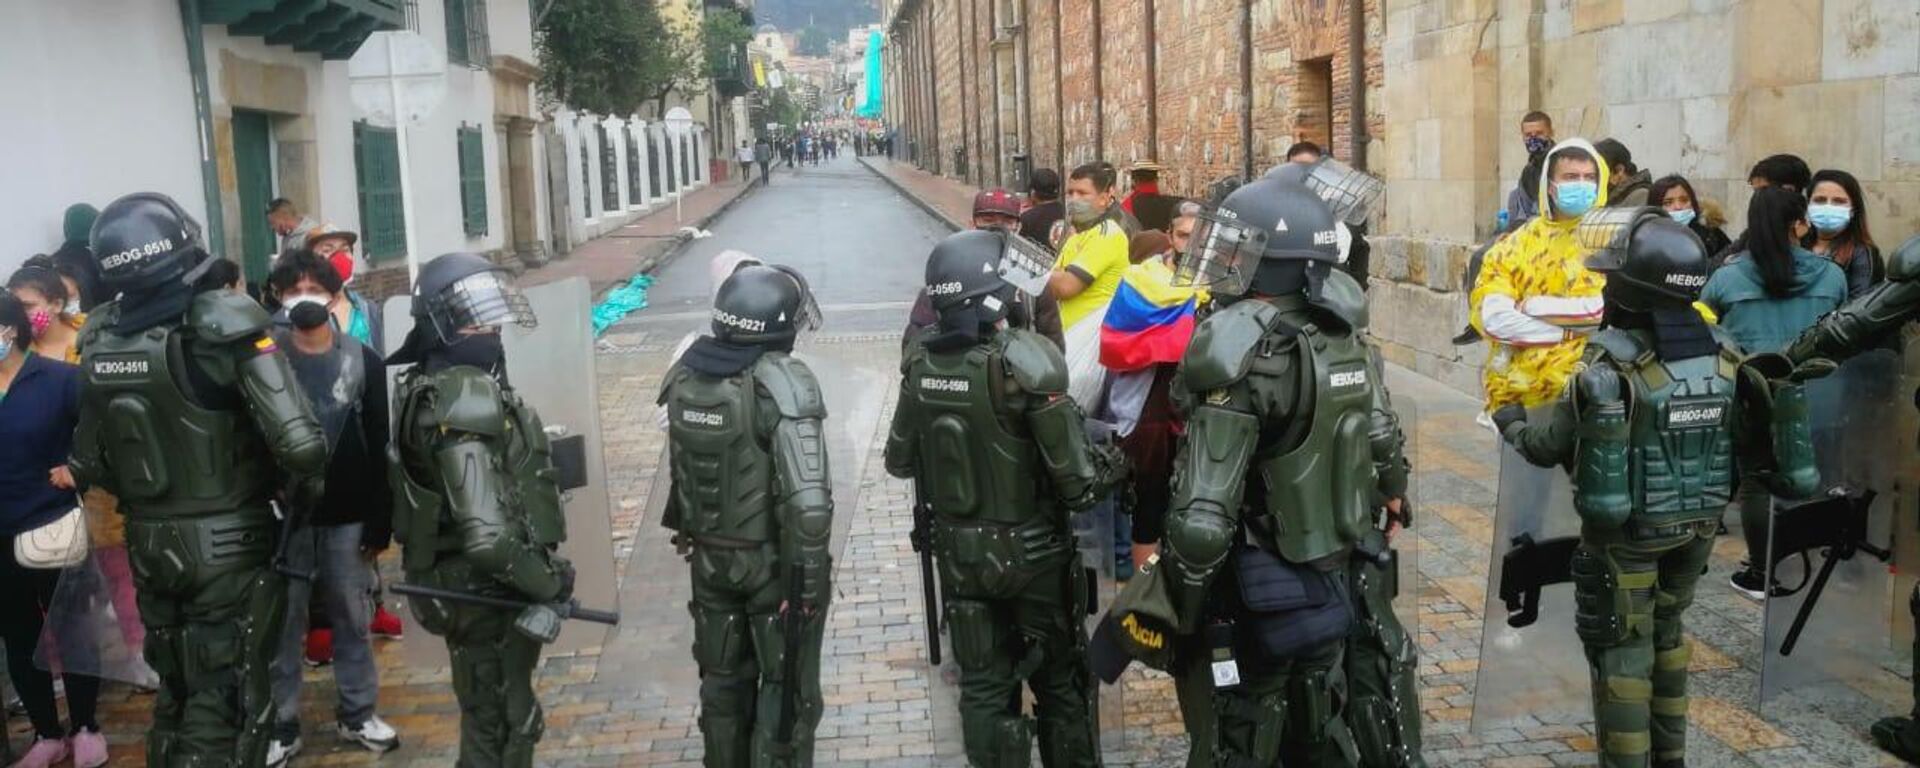 La Policía colombiana se desplegó en la jornada de protestas - Sputnik Mundo, 1920, 24.07.2021